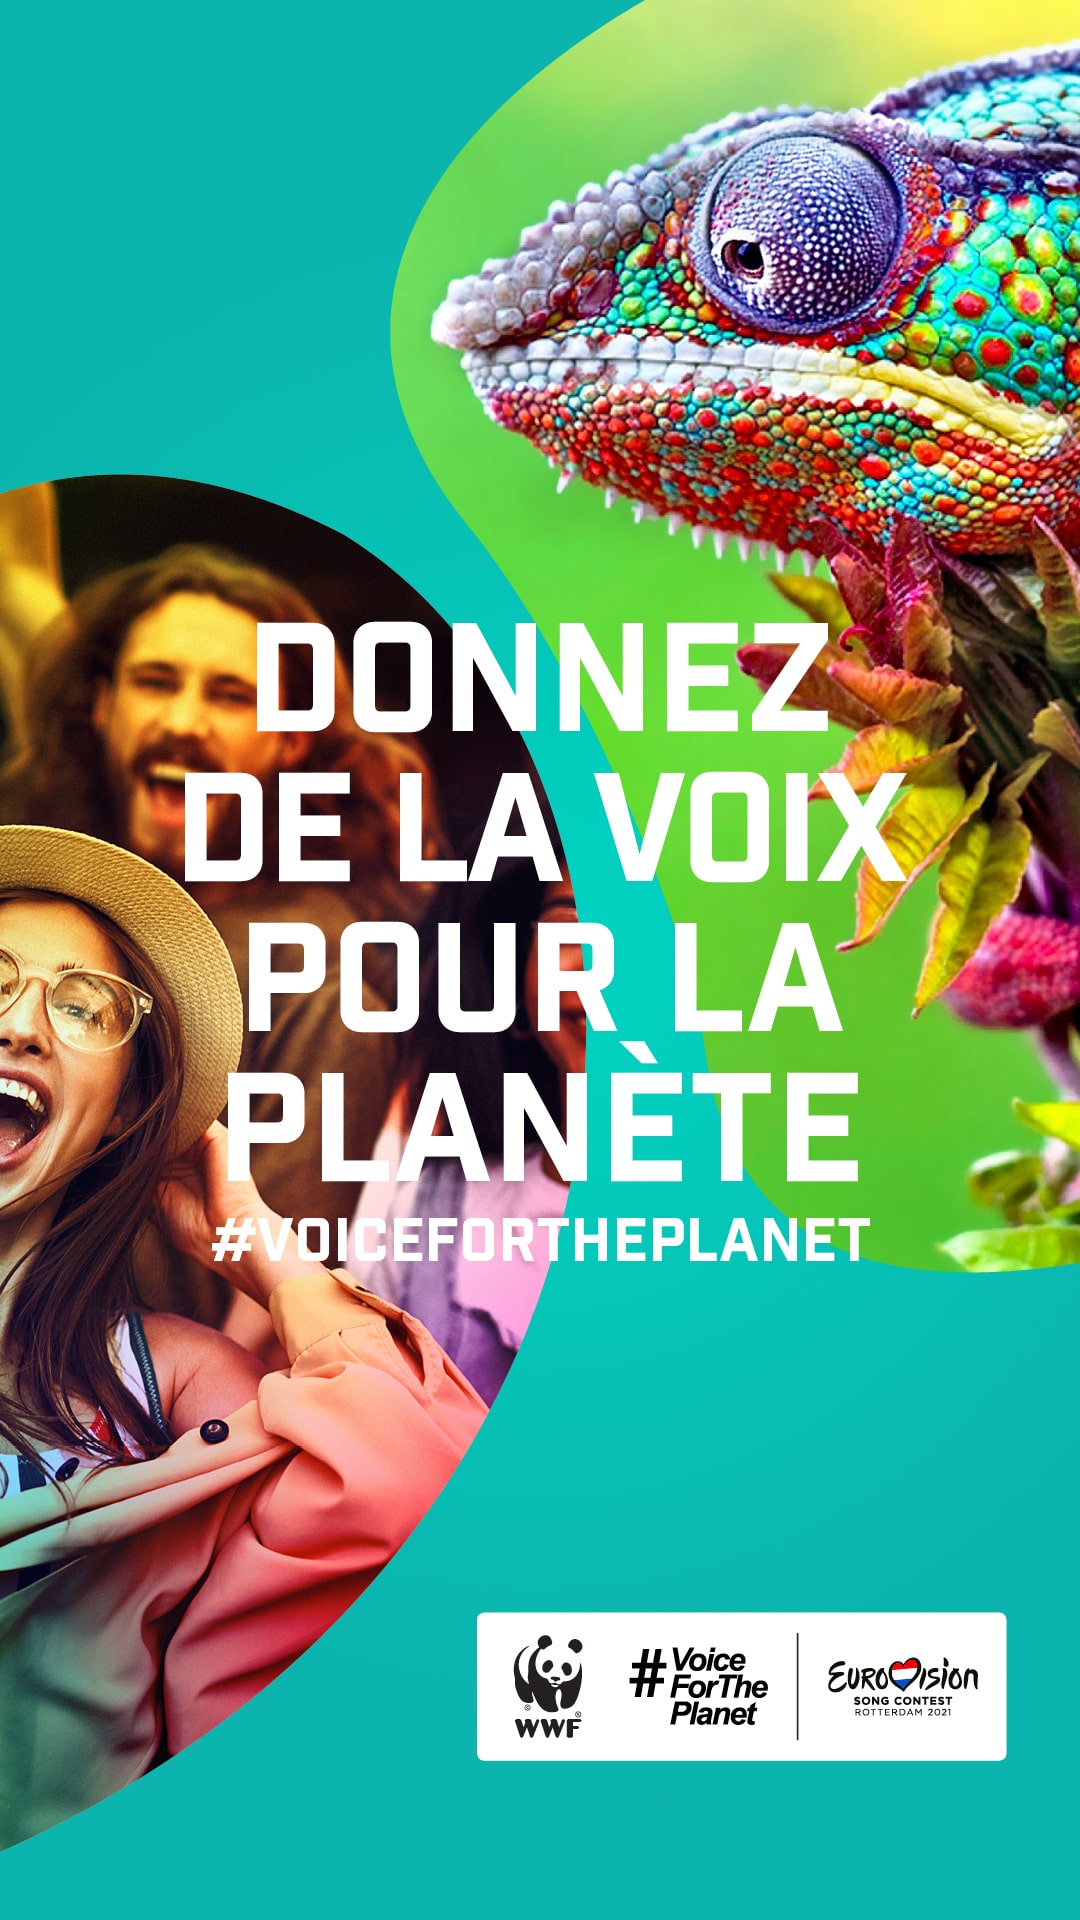 Image de présentation de la campagne Voice for the Planet